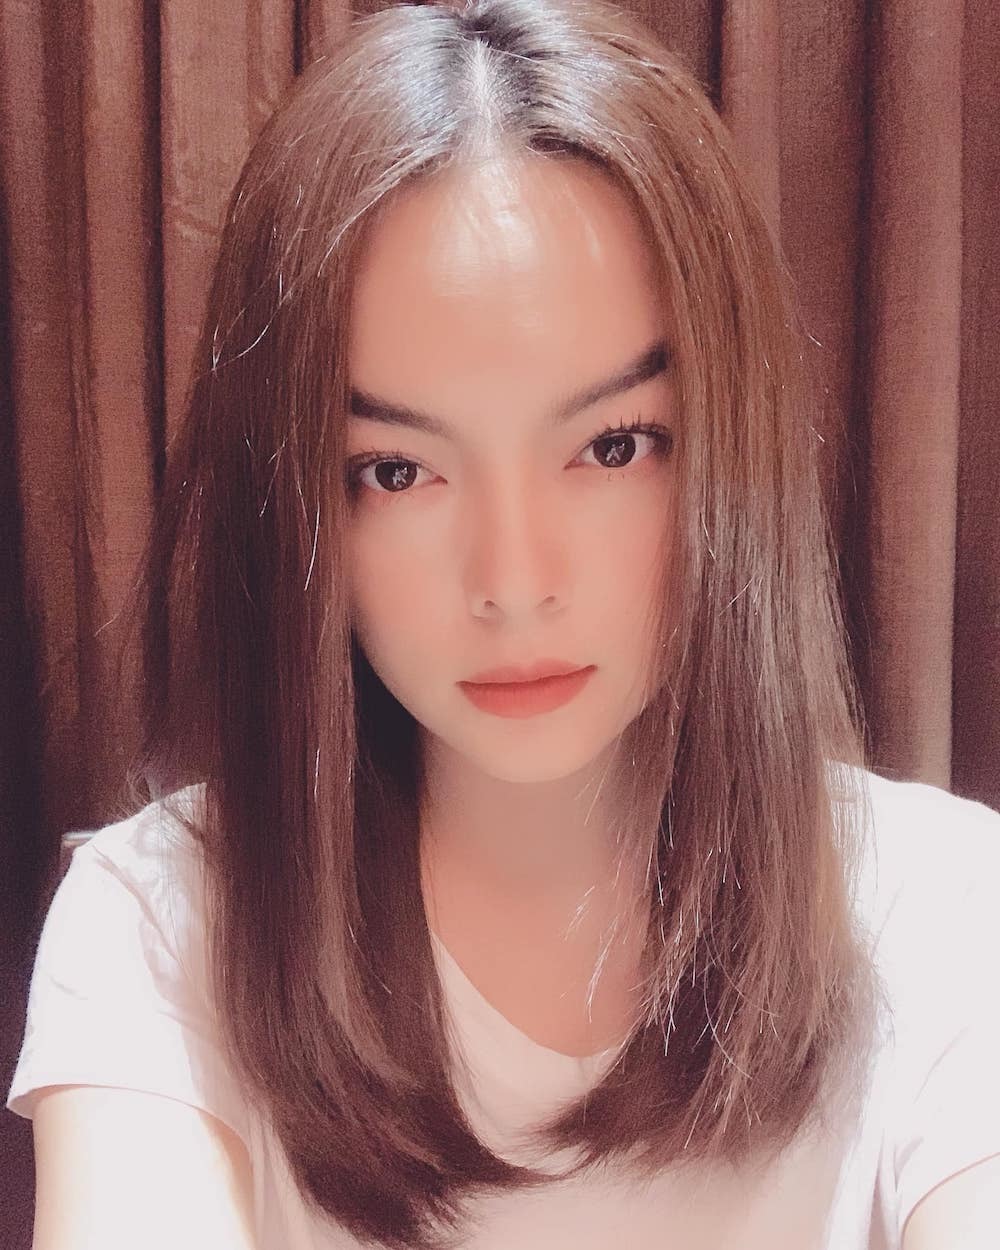 Hoa hậu Tiểu Vy gây bất ngờ với hình ảnh đẹp lạ ở tuổi 19